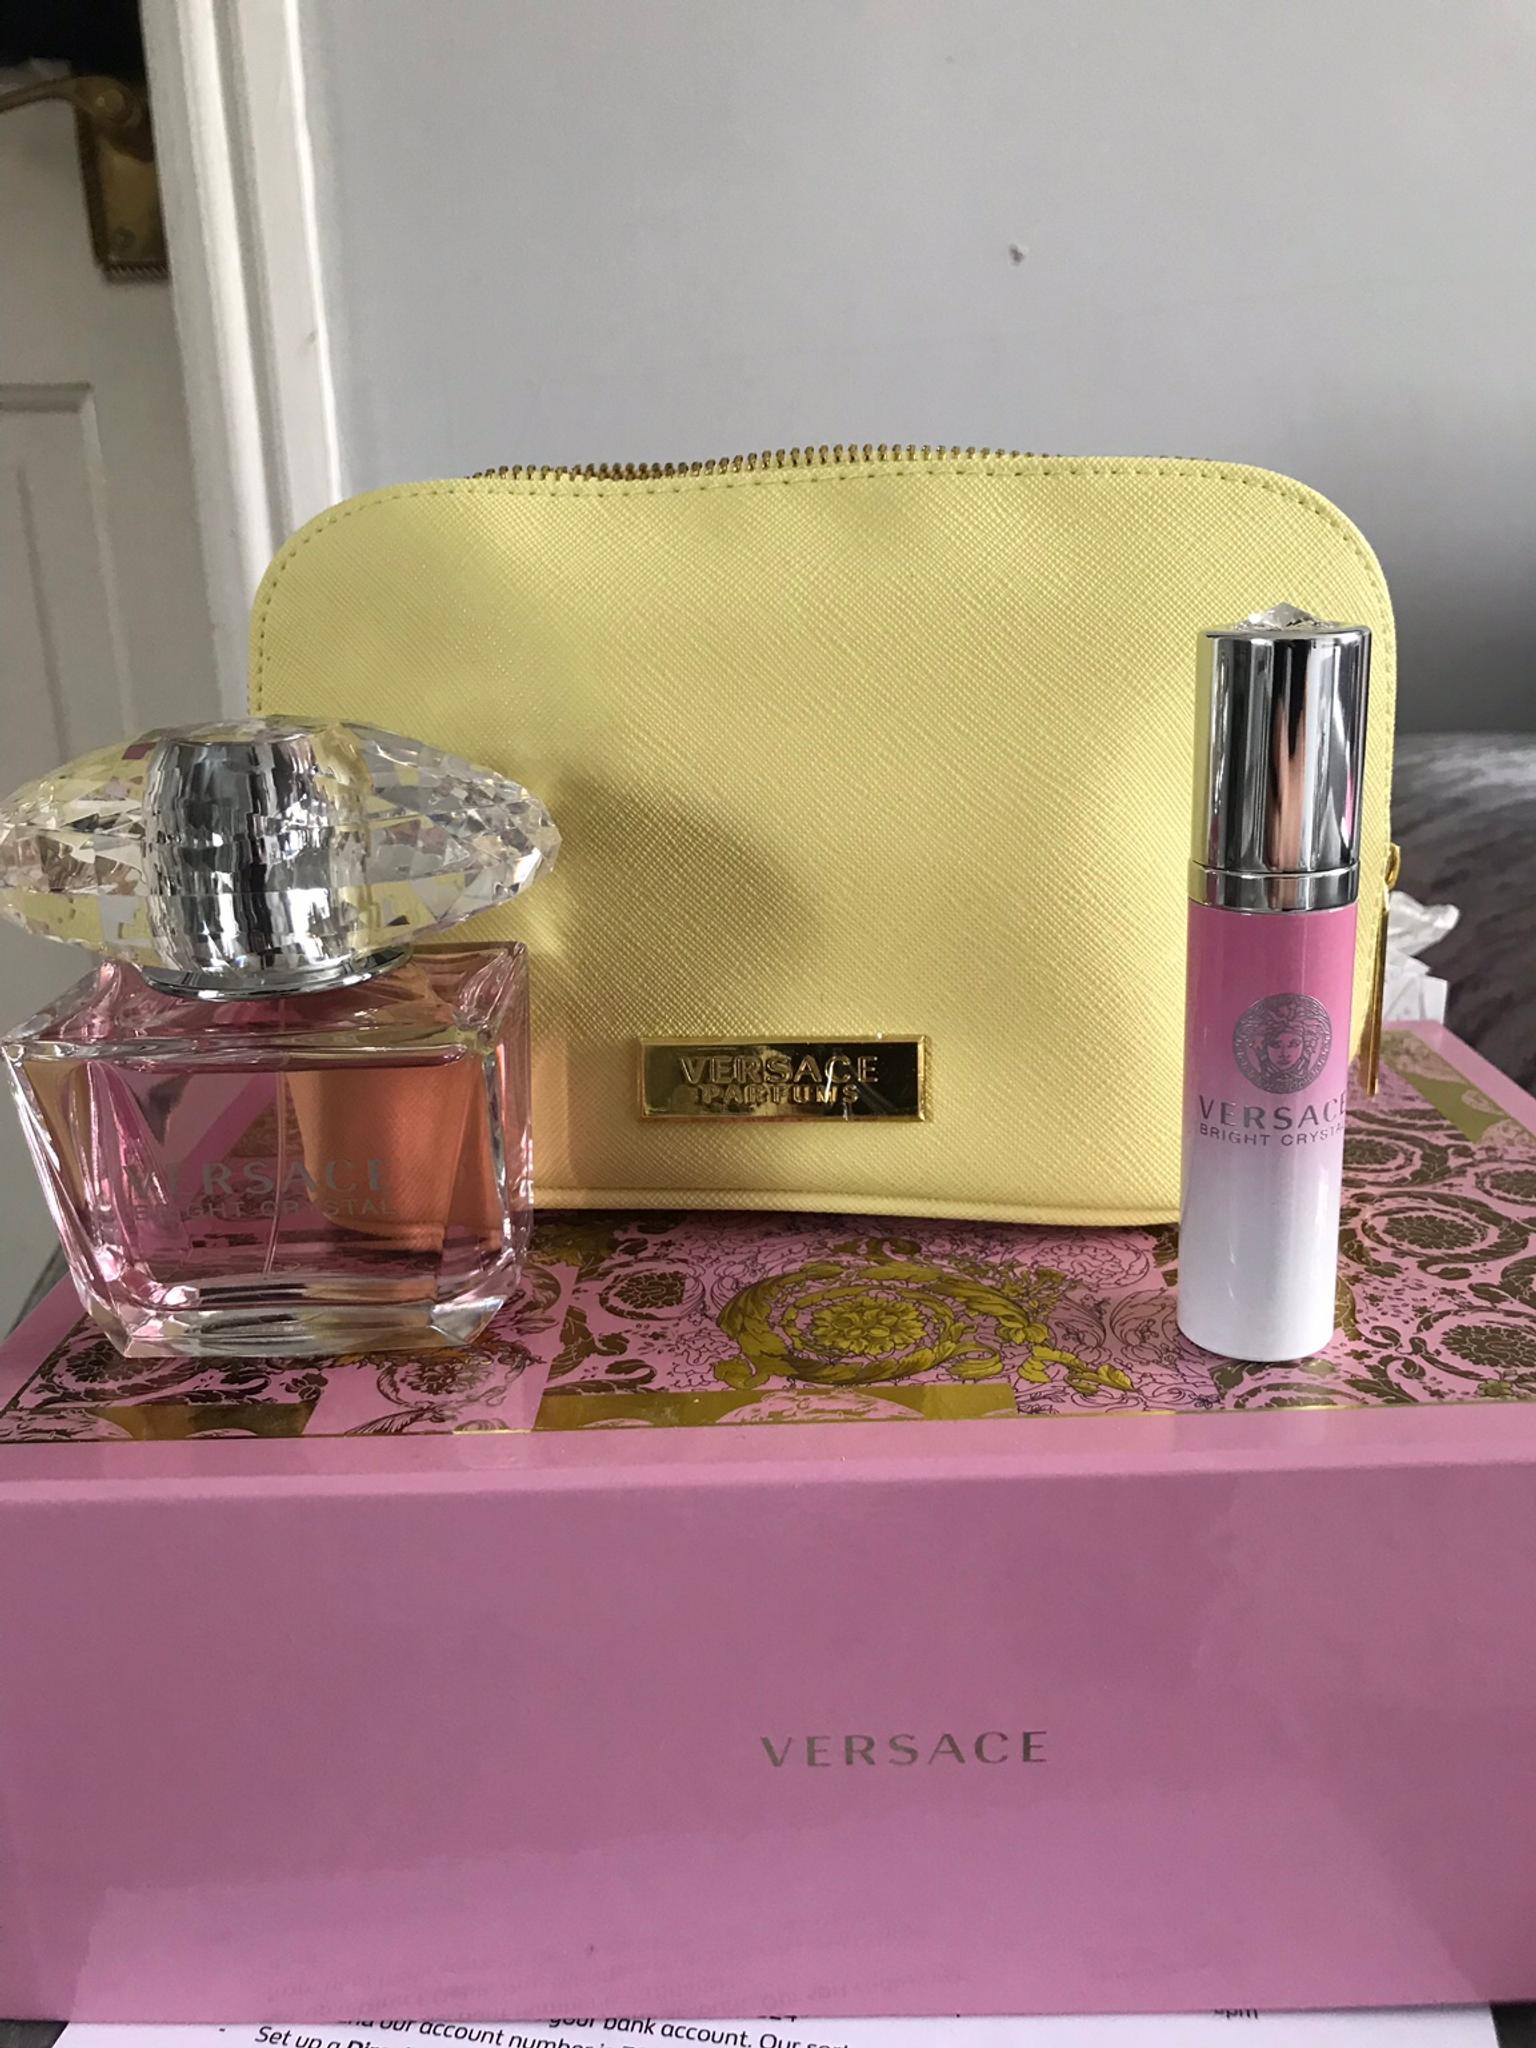 versace perfume bag set